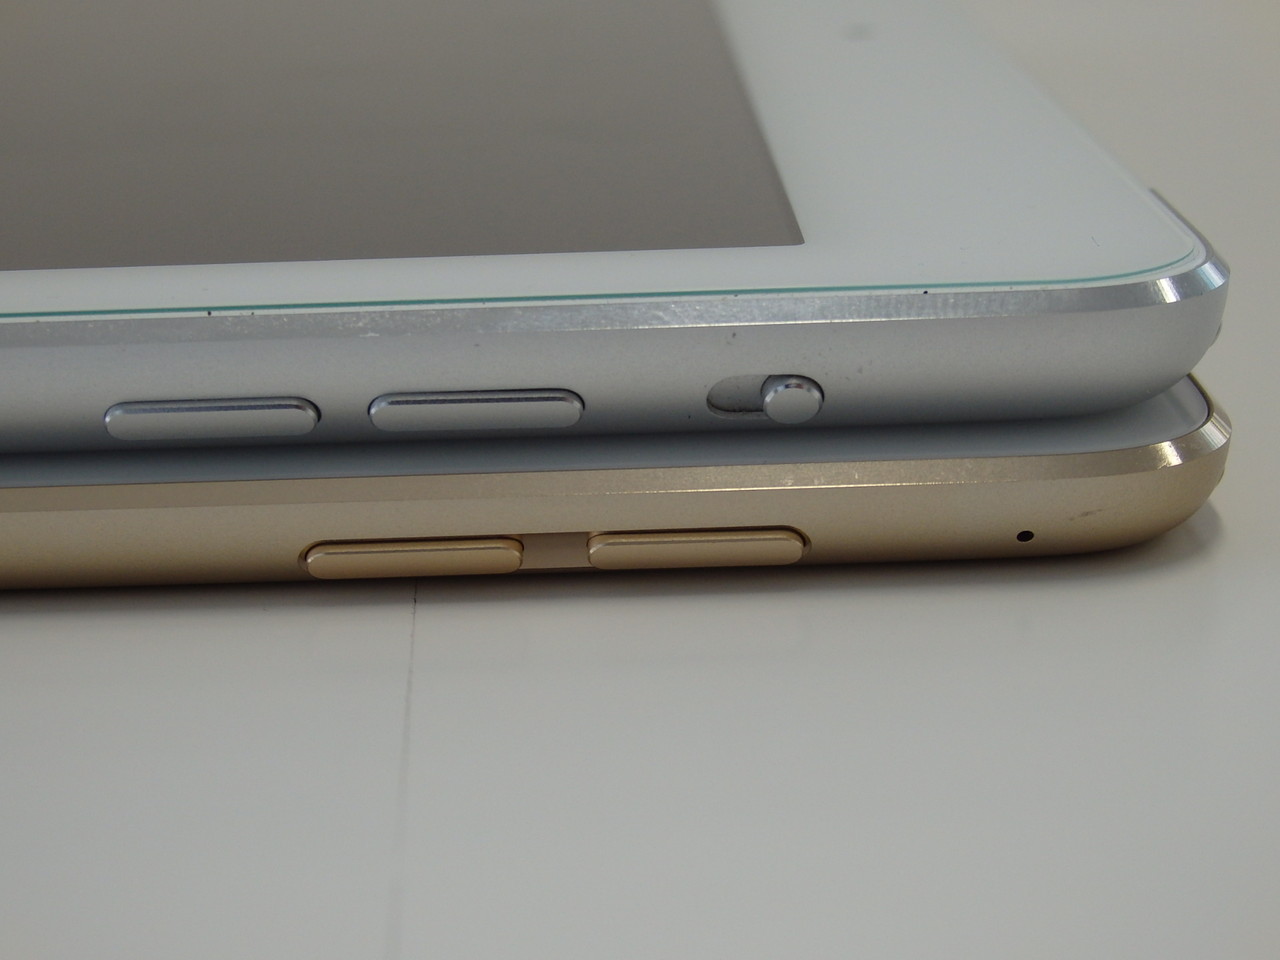 Appleの新しい9.7インチタブレット「iPad Air 2」の外観やソフトウェアをじっくり写真でチェック！どれだけ薄くなった？【レビュー